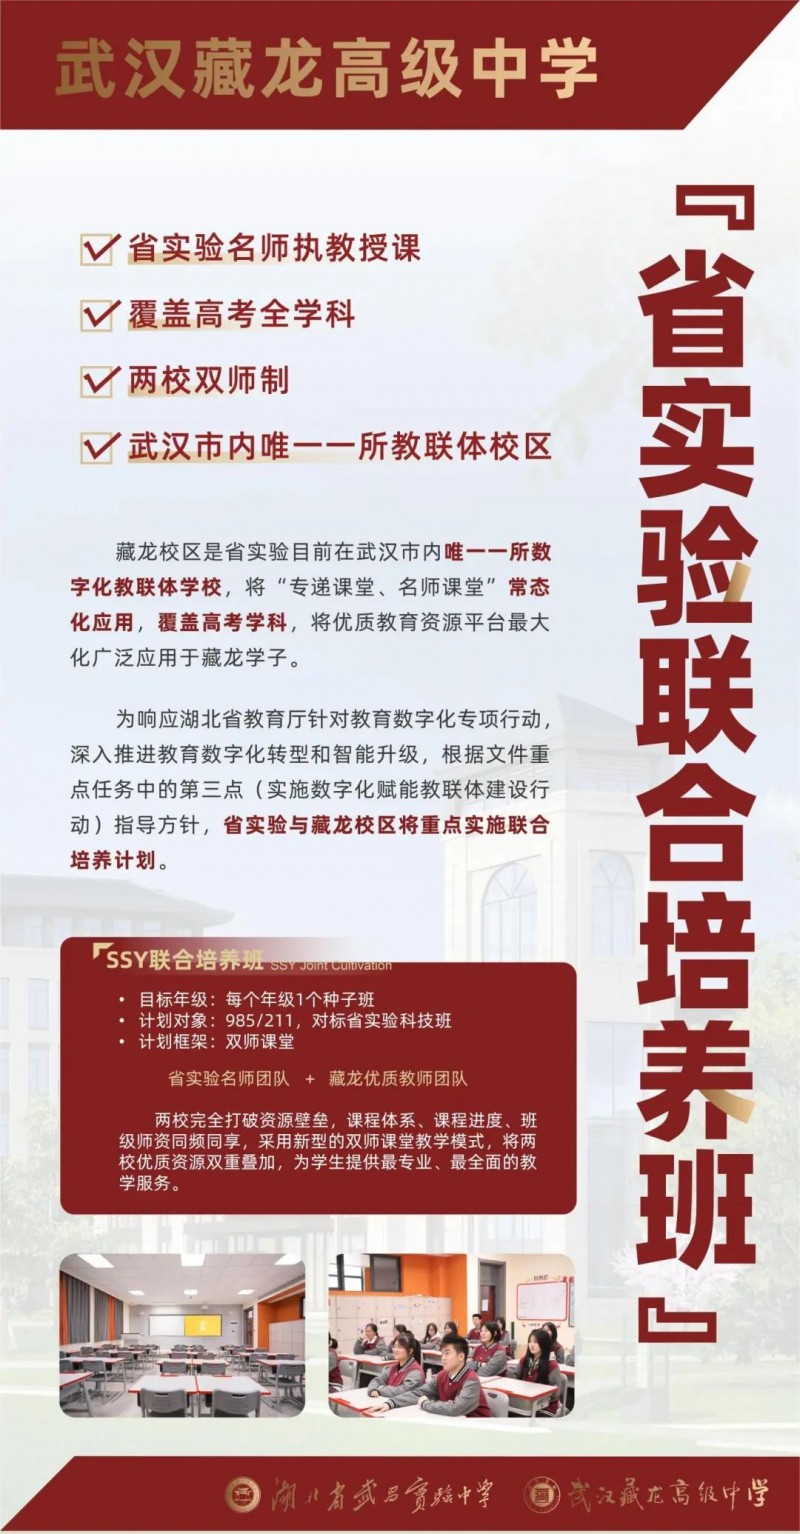 武汉藏龙高中：砥砺前行 为打造优质学校而不懈奋斗